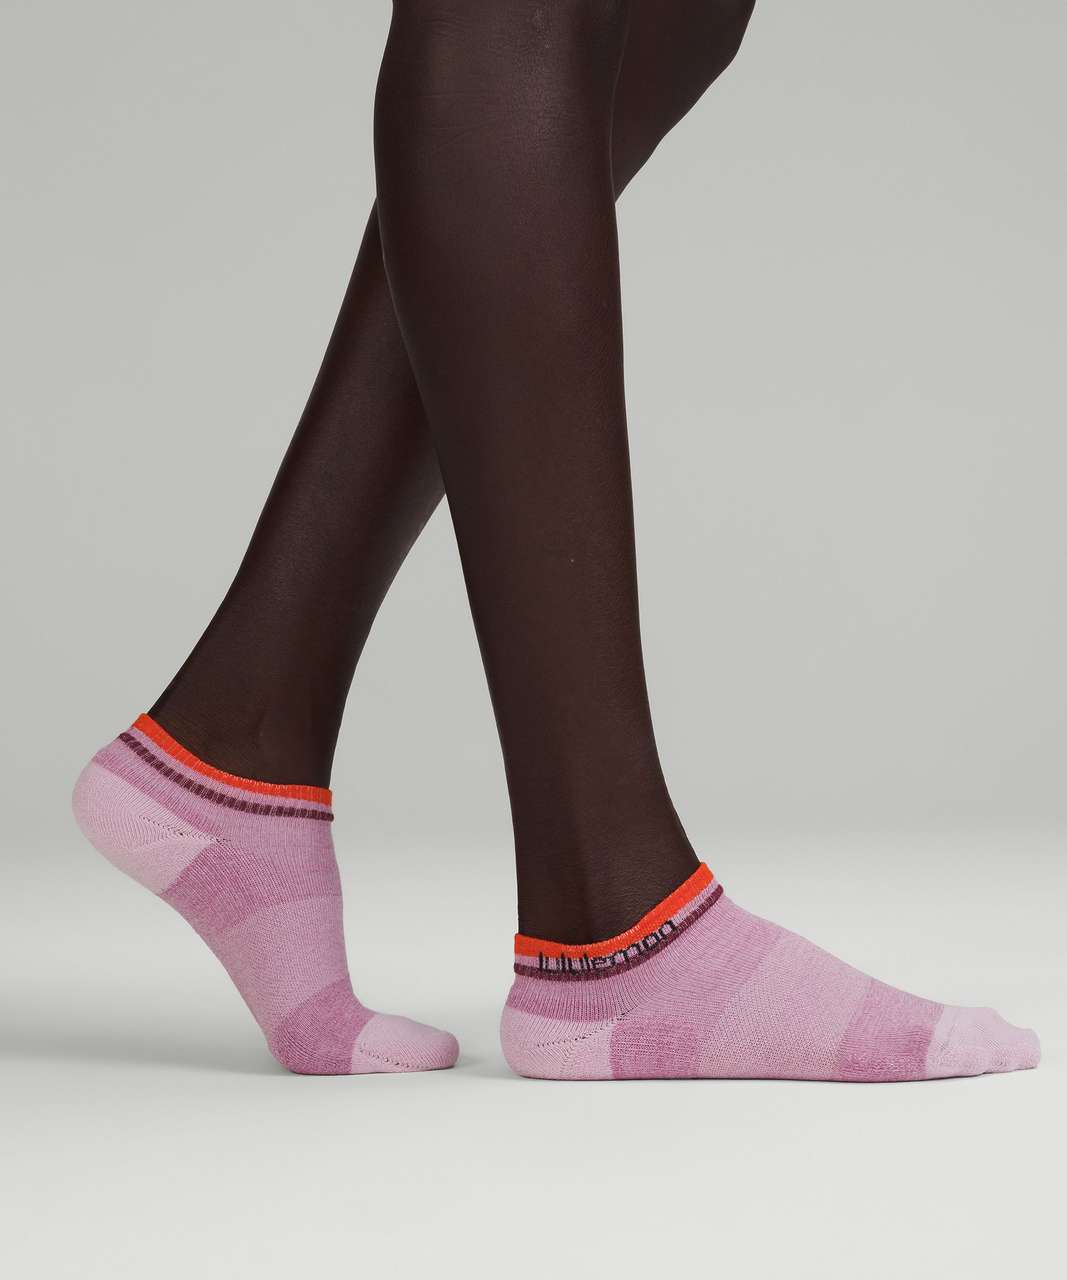 Lululemon Womens Daily Stride Comfort Ankle Sock *3 Pack - Velvet Dust / White / Solar Orange